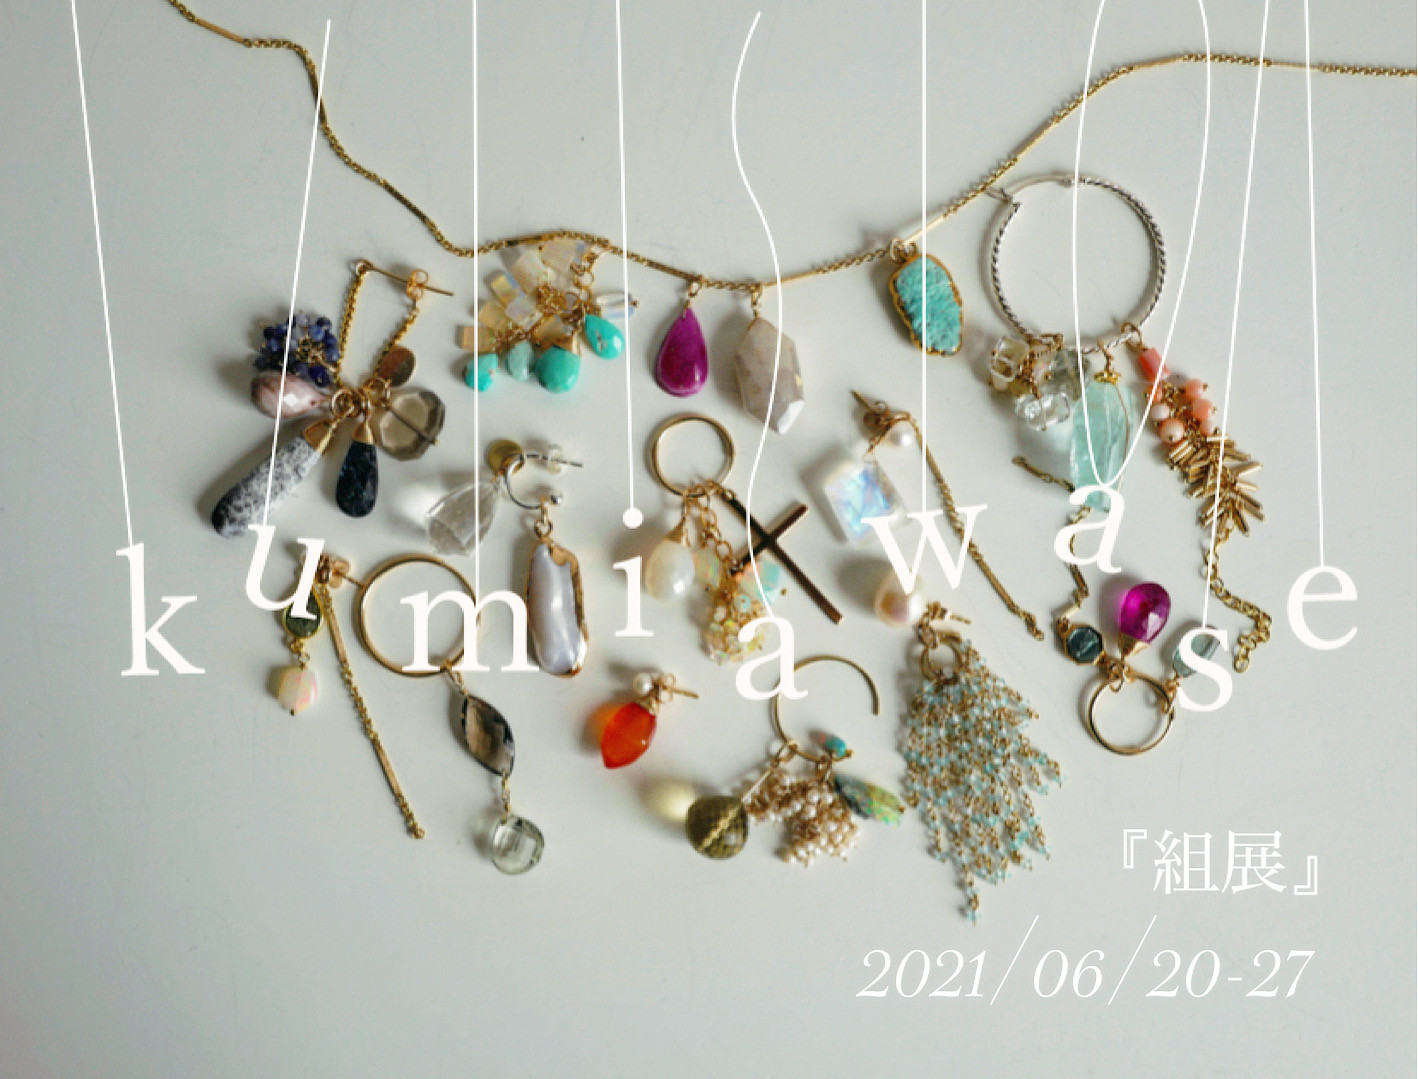 6月 exhibition